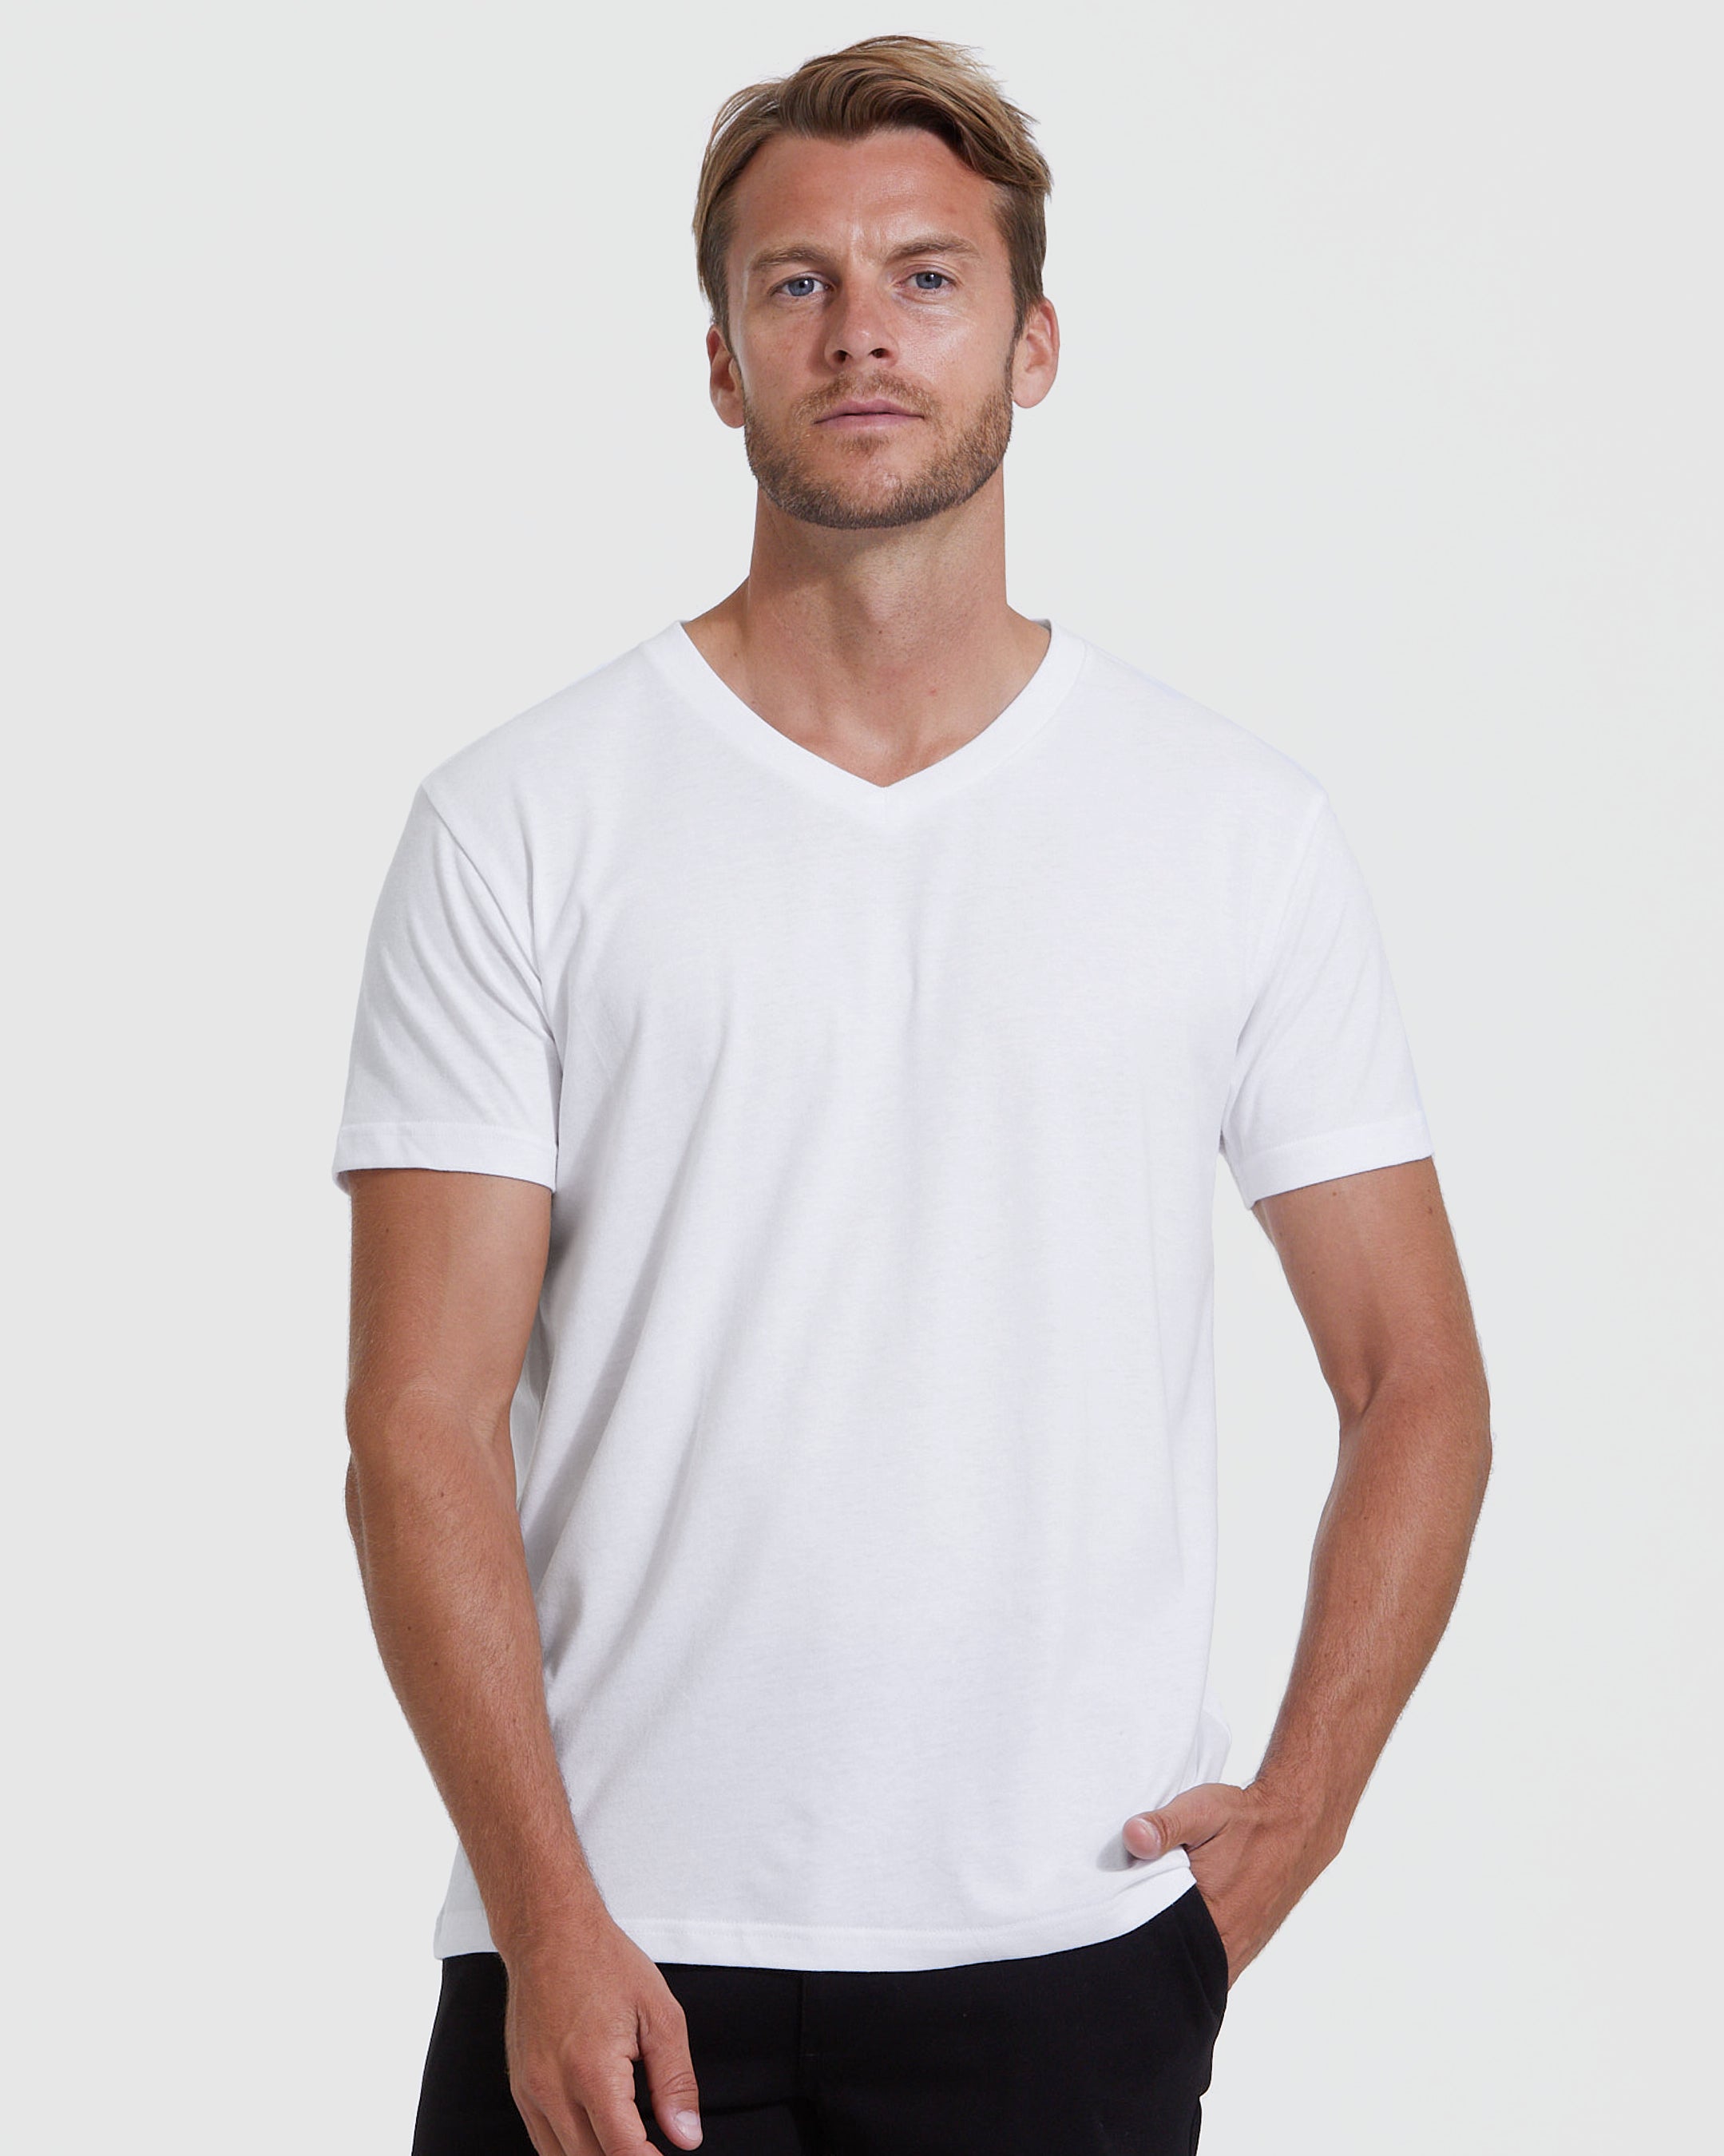 White V-Neck True | V-Neck Shirt White T-Shirt Men\'s | Classic